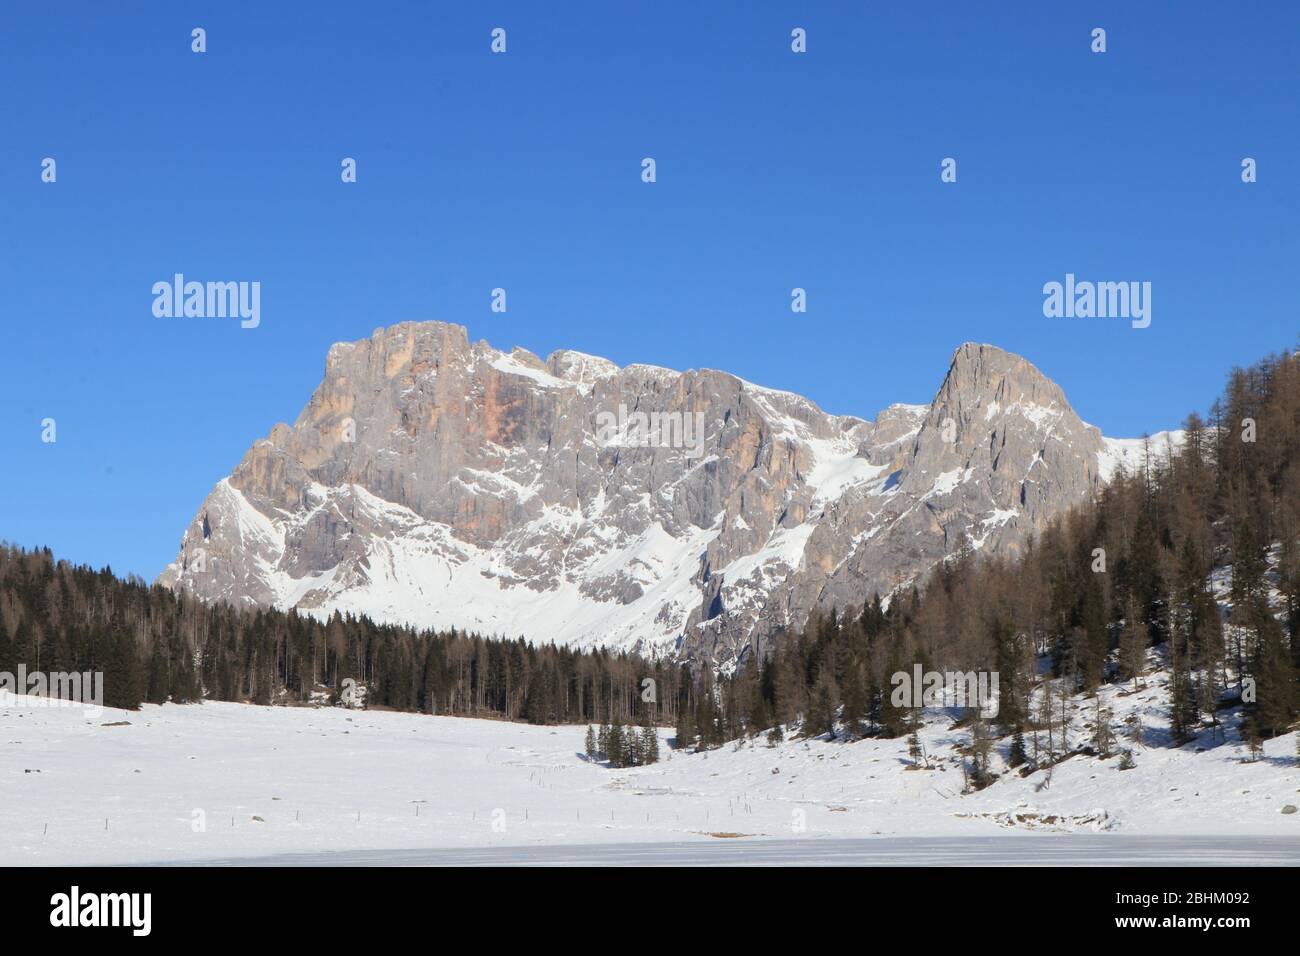 Paysage d'une montagne enneigée. Photo de haute qualité Banque D'Images